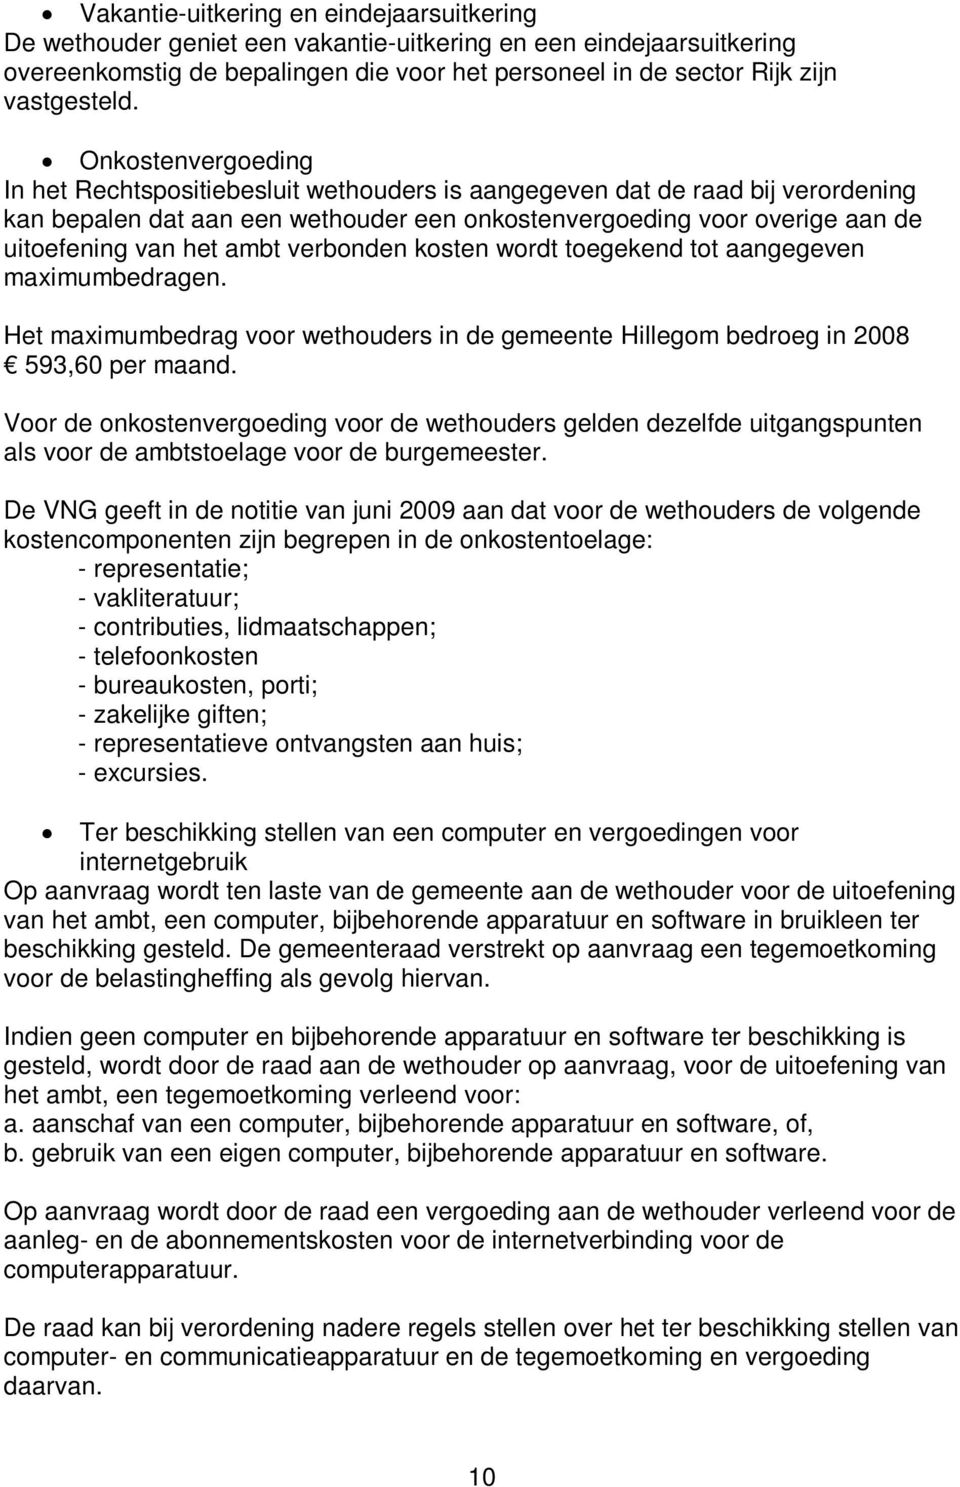 ambt verbonden kosten wordt toegekend tot aangegeven maximumbedragen. Het maximumbedrag voor wethouders in de gemeente Hillegom bedroeg in 2008 593,60 per maand.